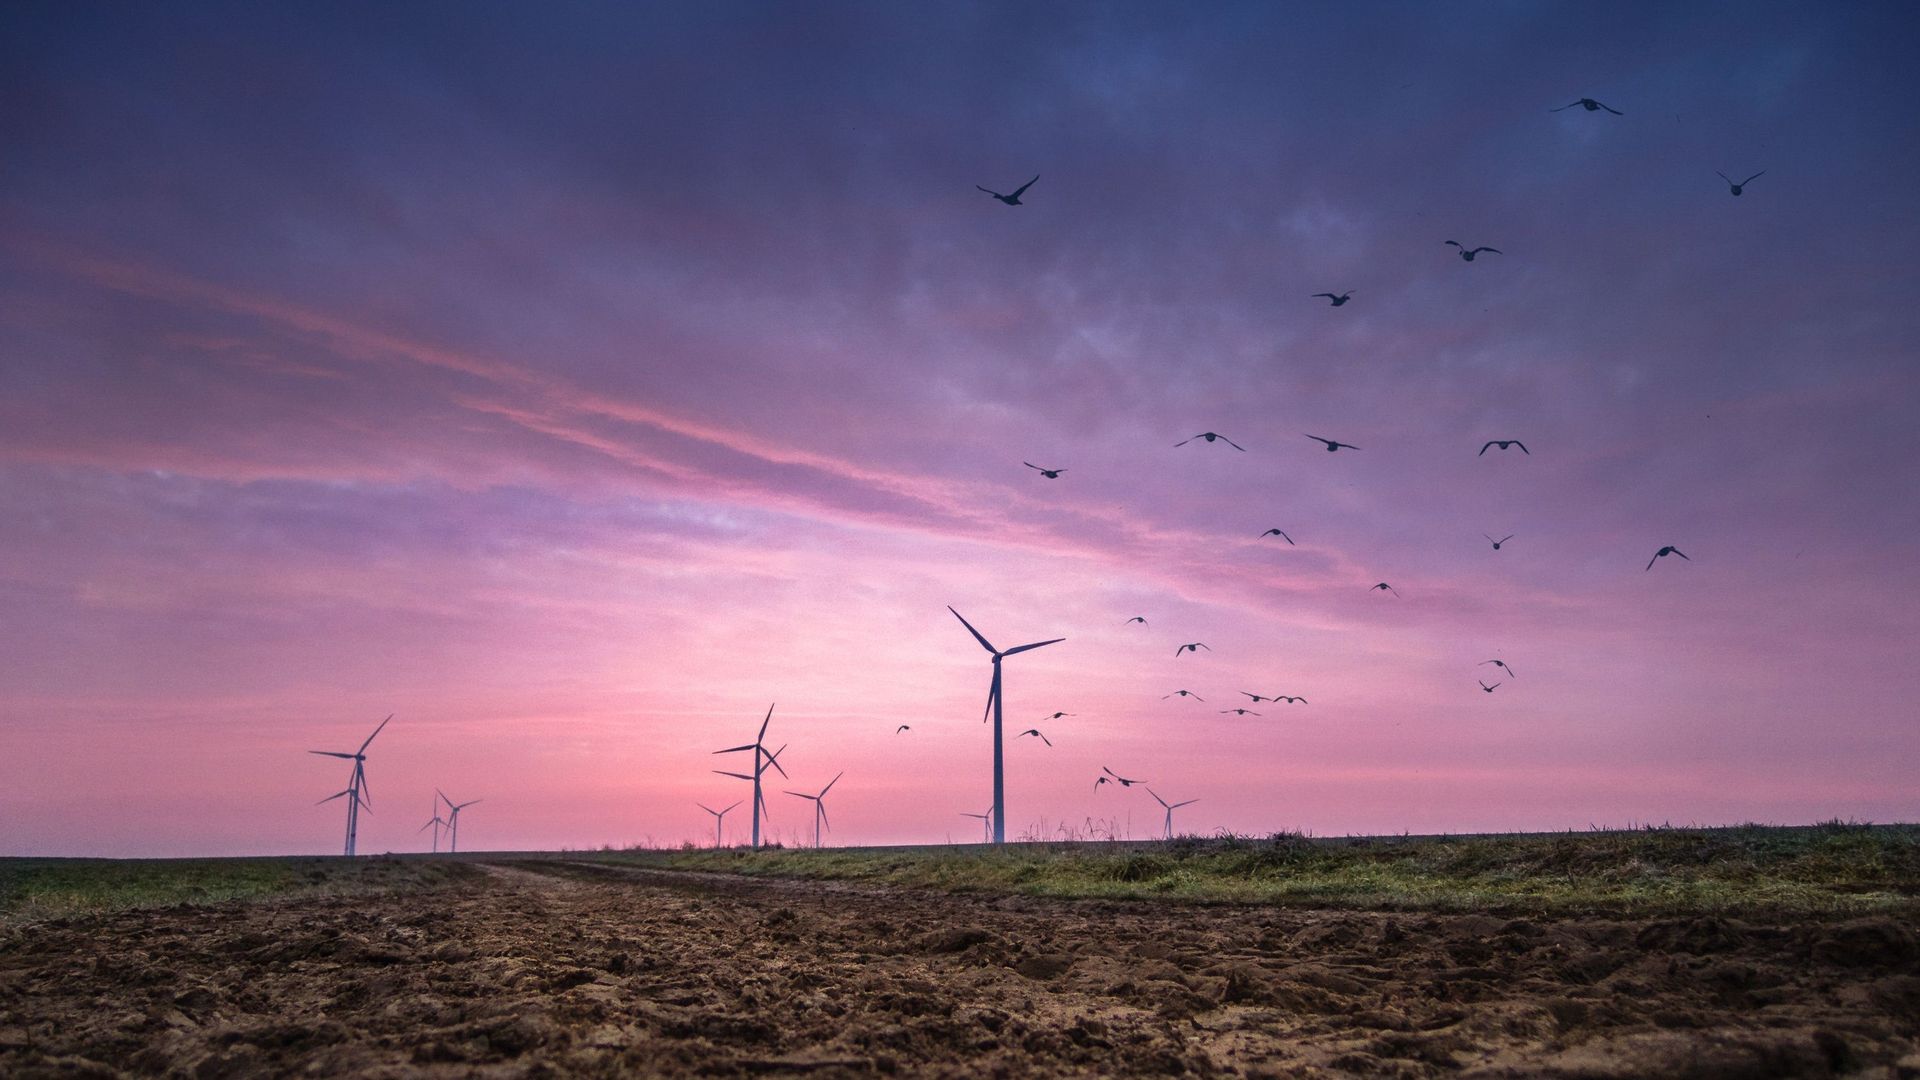 Le développement du secteur éolien a entraîné une hausse considérable de la mortalité chez les oiseaux. Des chercheurs norvégiens proposent une solution originale pour lutter contre ce paradoxe.